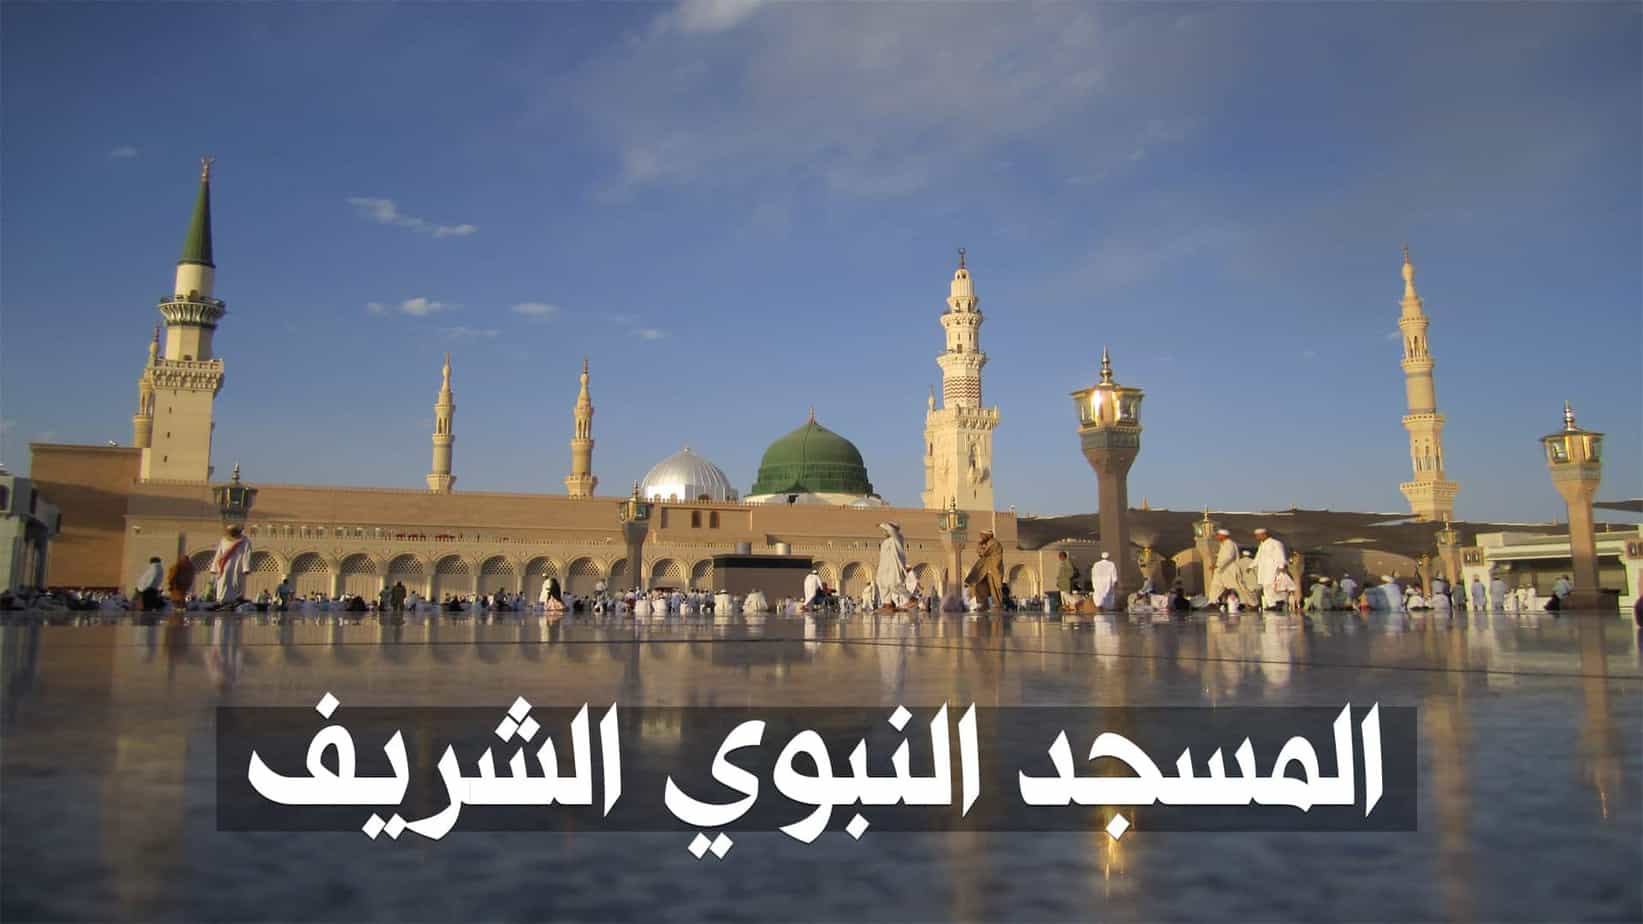 معلومات عن المسجد النبوي و صورة مخطط المسجد بالعربي عطلات